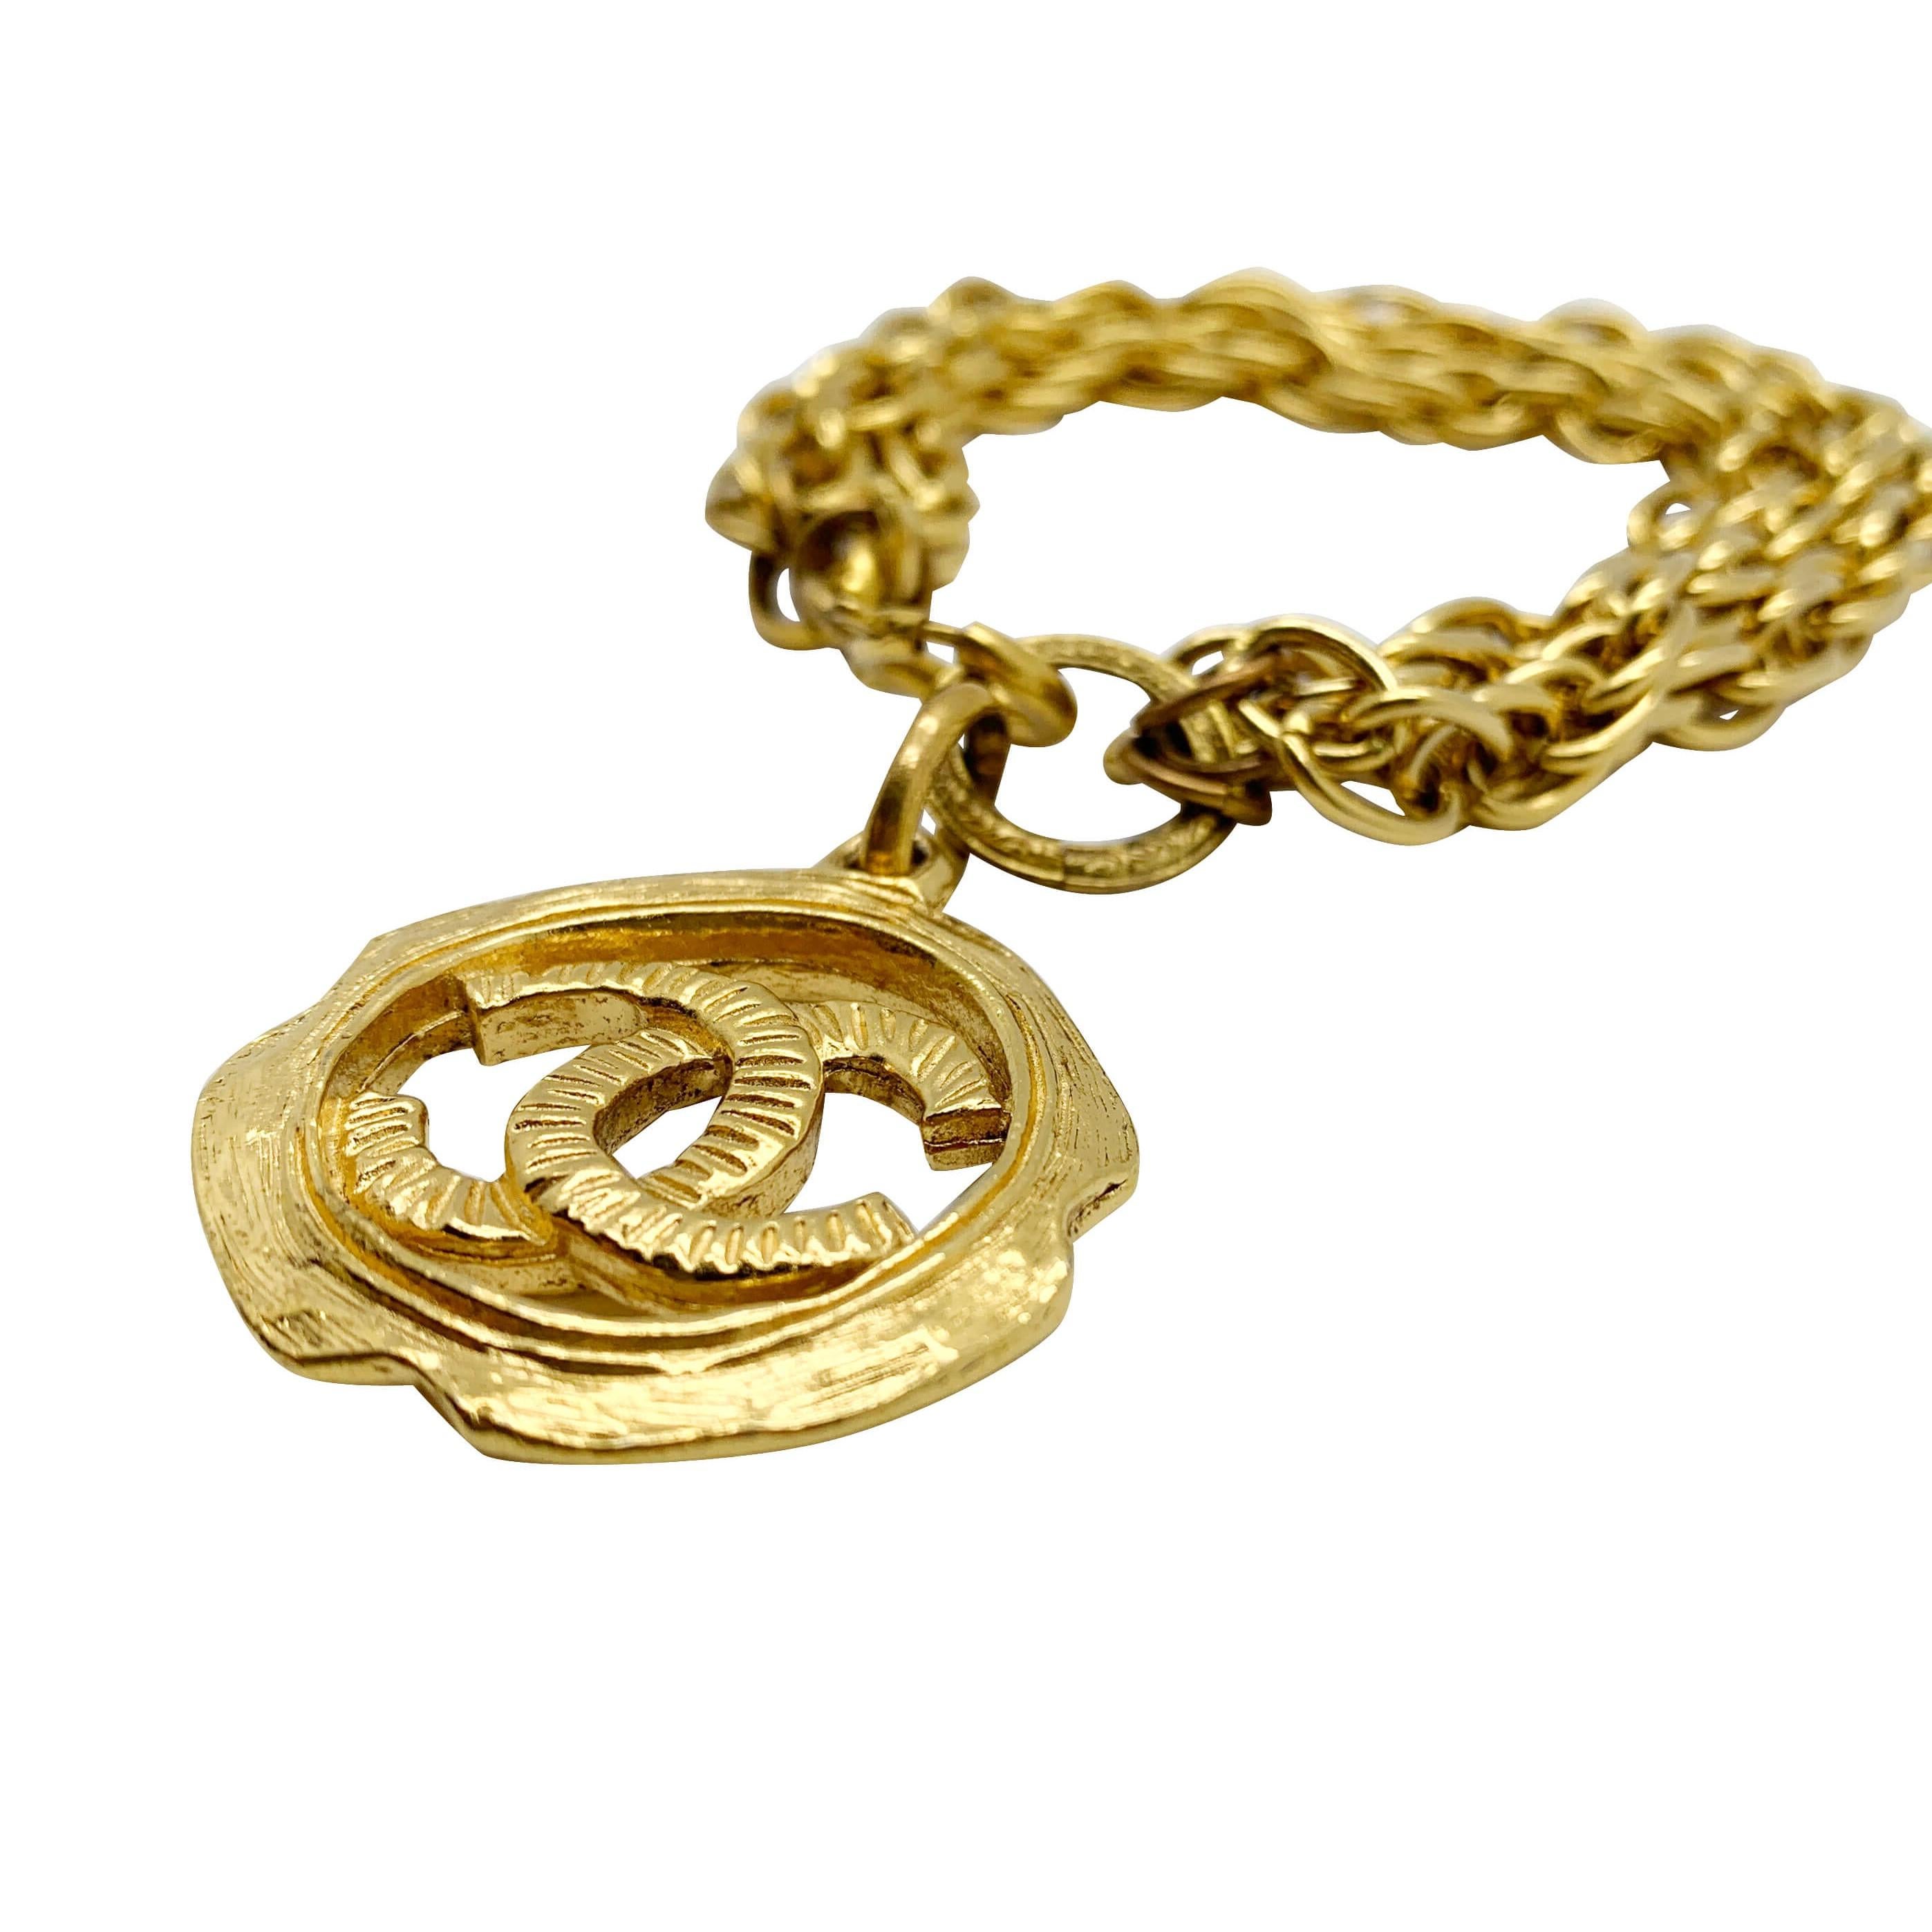 Unser Vintage Chanel Logo Charm-Armband. Ein atemberaubendes Armband mit Charme aus dem Hause Chanel, das an die glamourösen 1980er Jahre und die Herrschaft von Karl Lagerfeld und Victoire de Castellane erinnert. Das große, ineinandergreifende